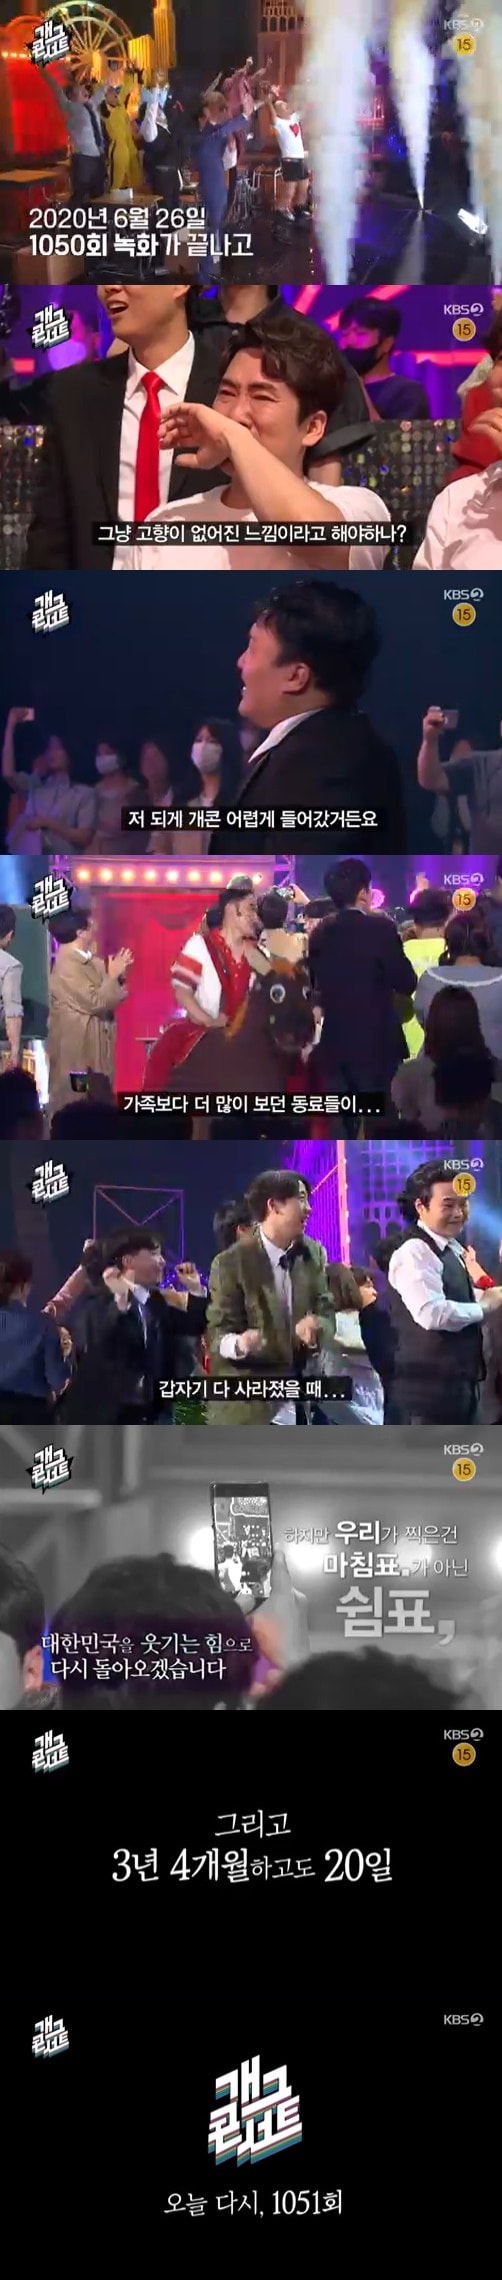 KBS 2TV '개그콘서트' 방송 화면 캡처